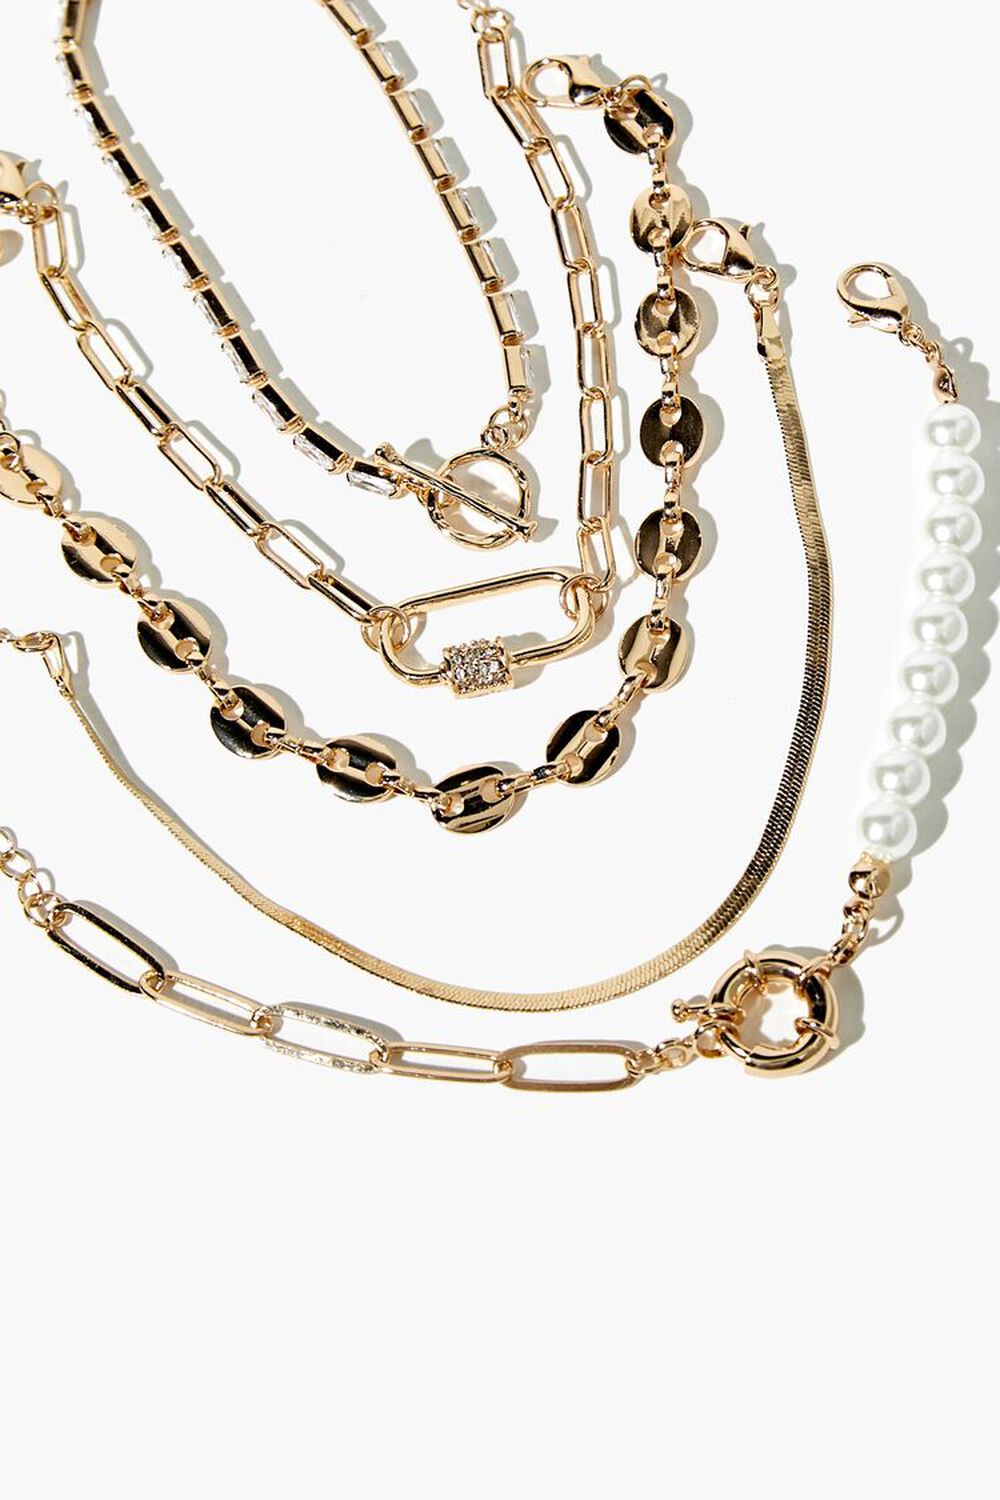 GOLD Faux Pearl & Faux Gem Bracelet Set, image 1